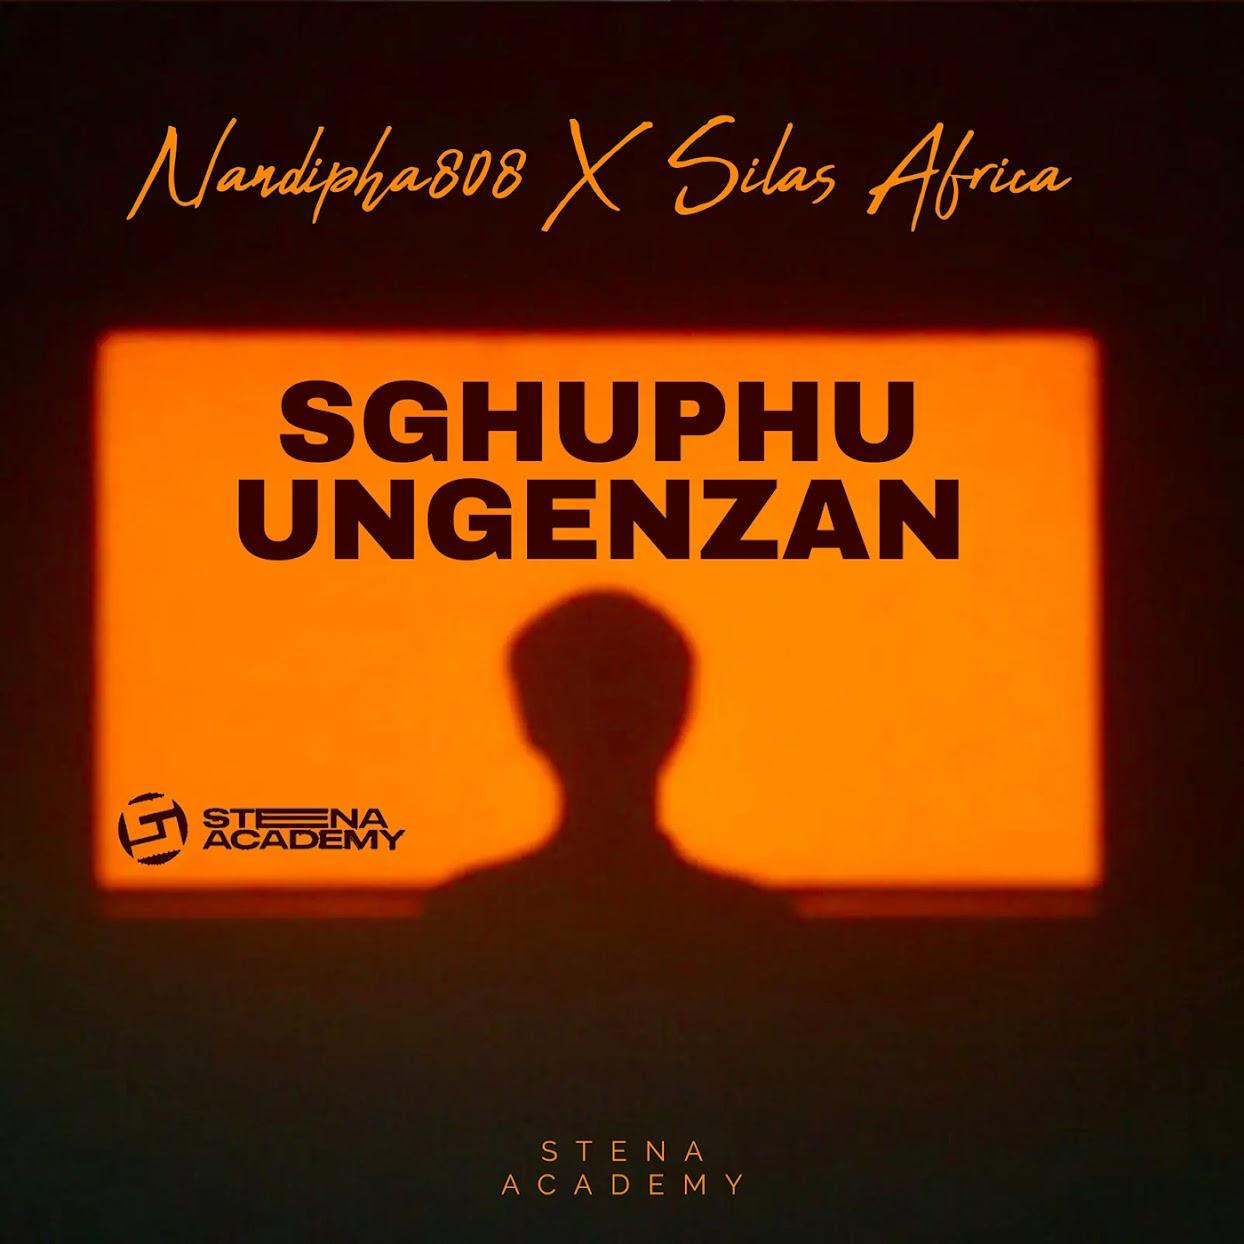 Nandipha808 - Sghuphu Ungenzan (feat. Silas Africa)